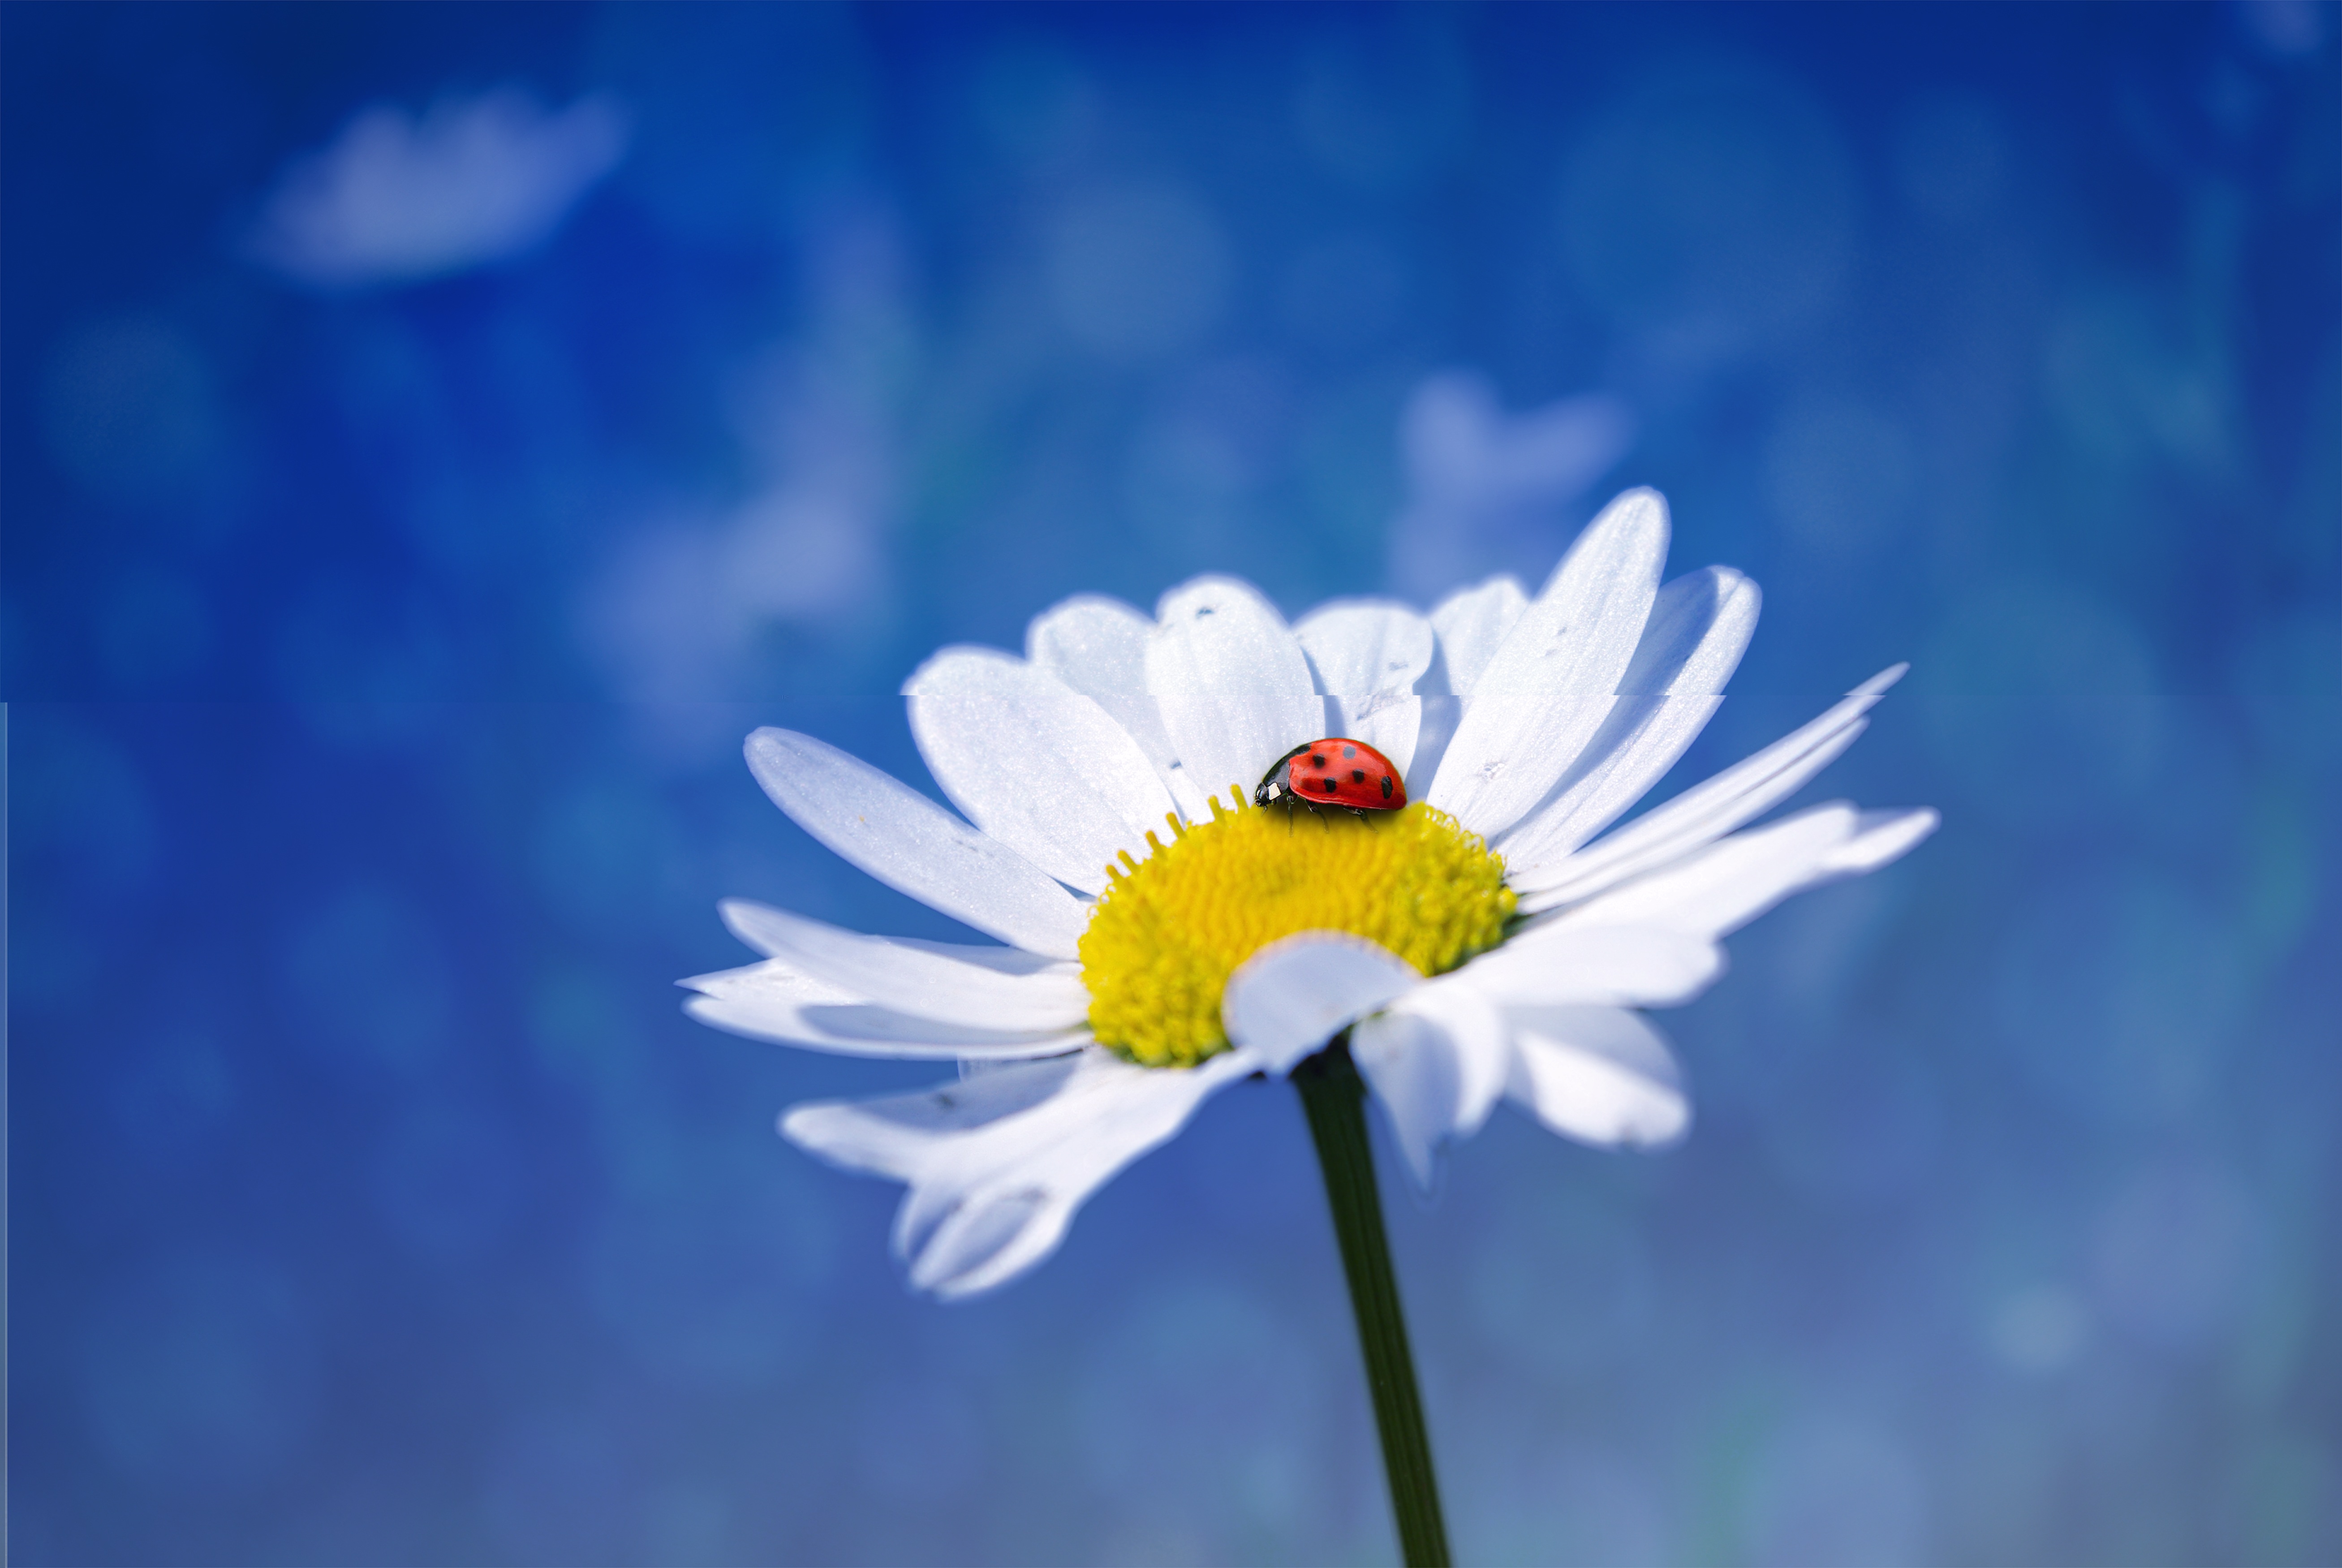 Ladybug in the garden photo